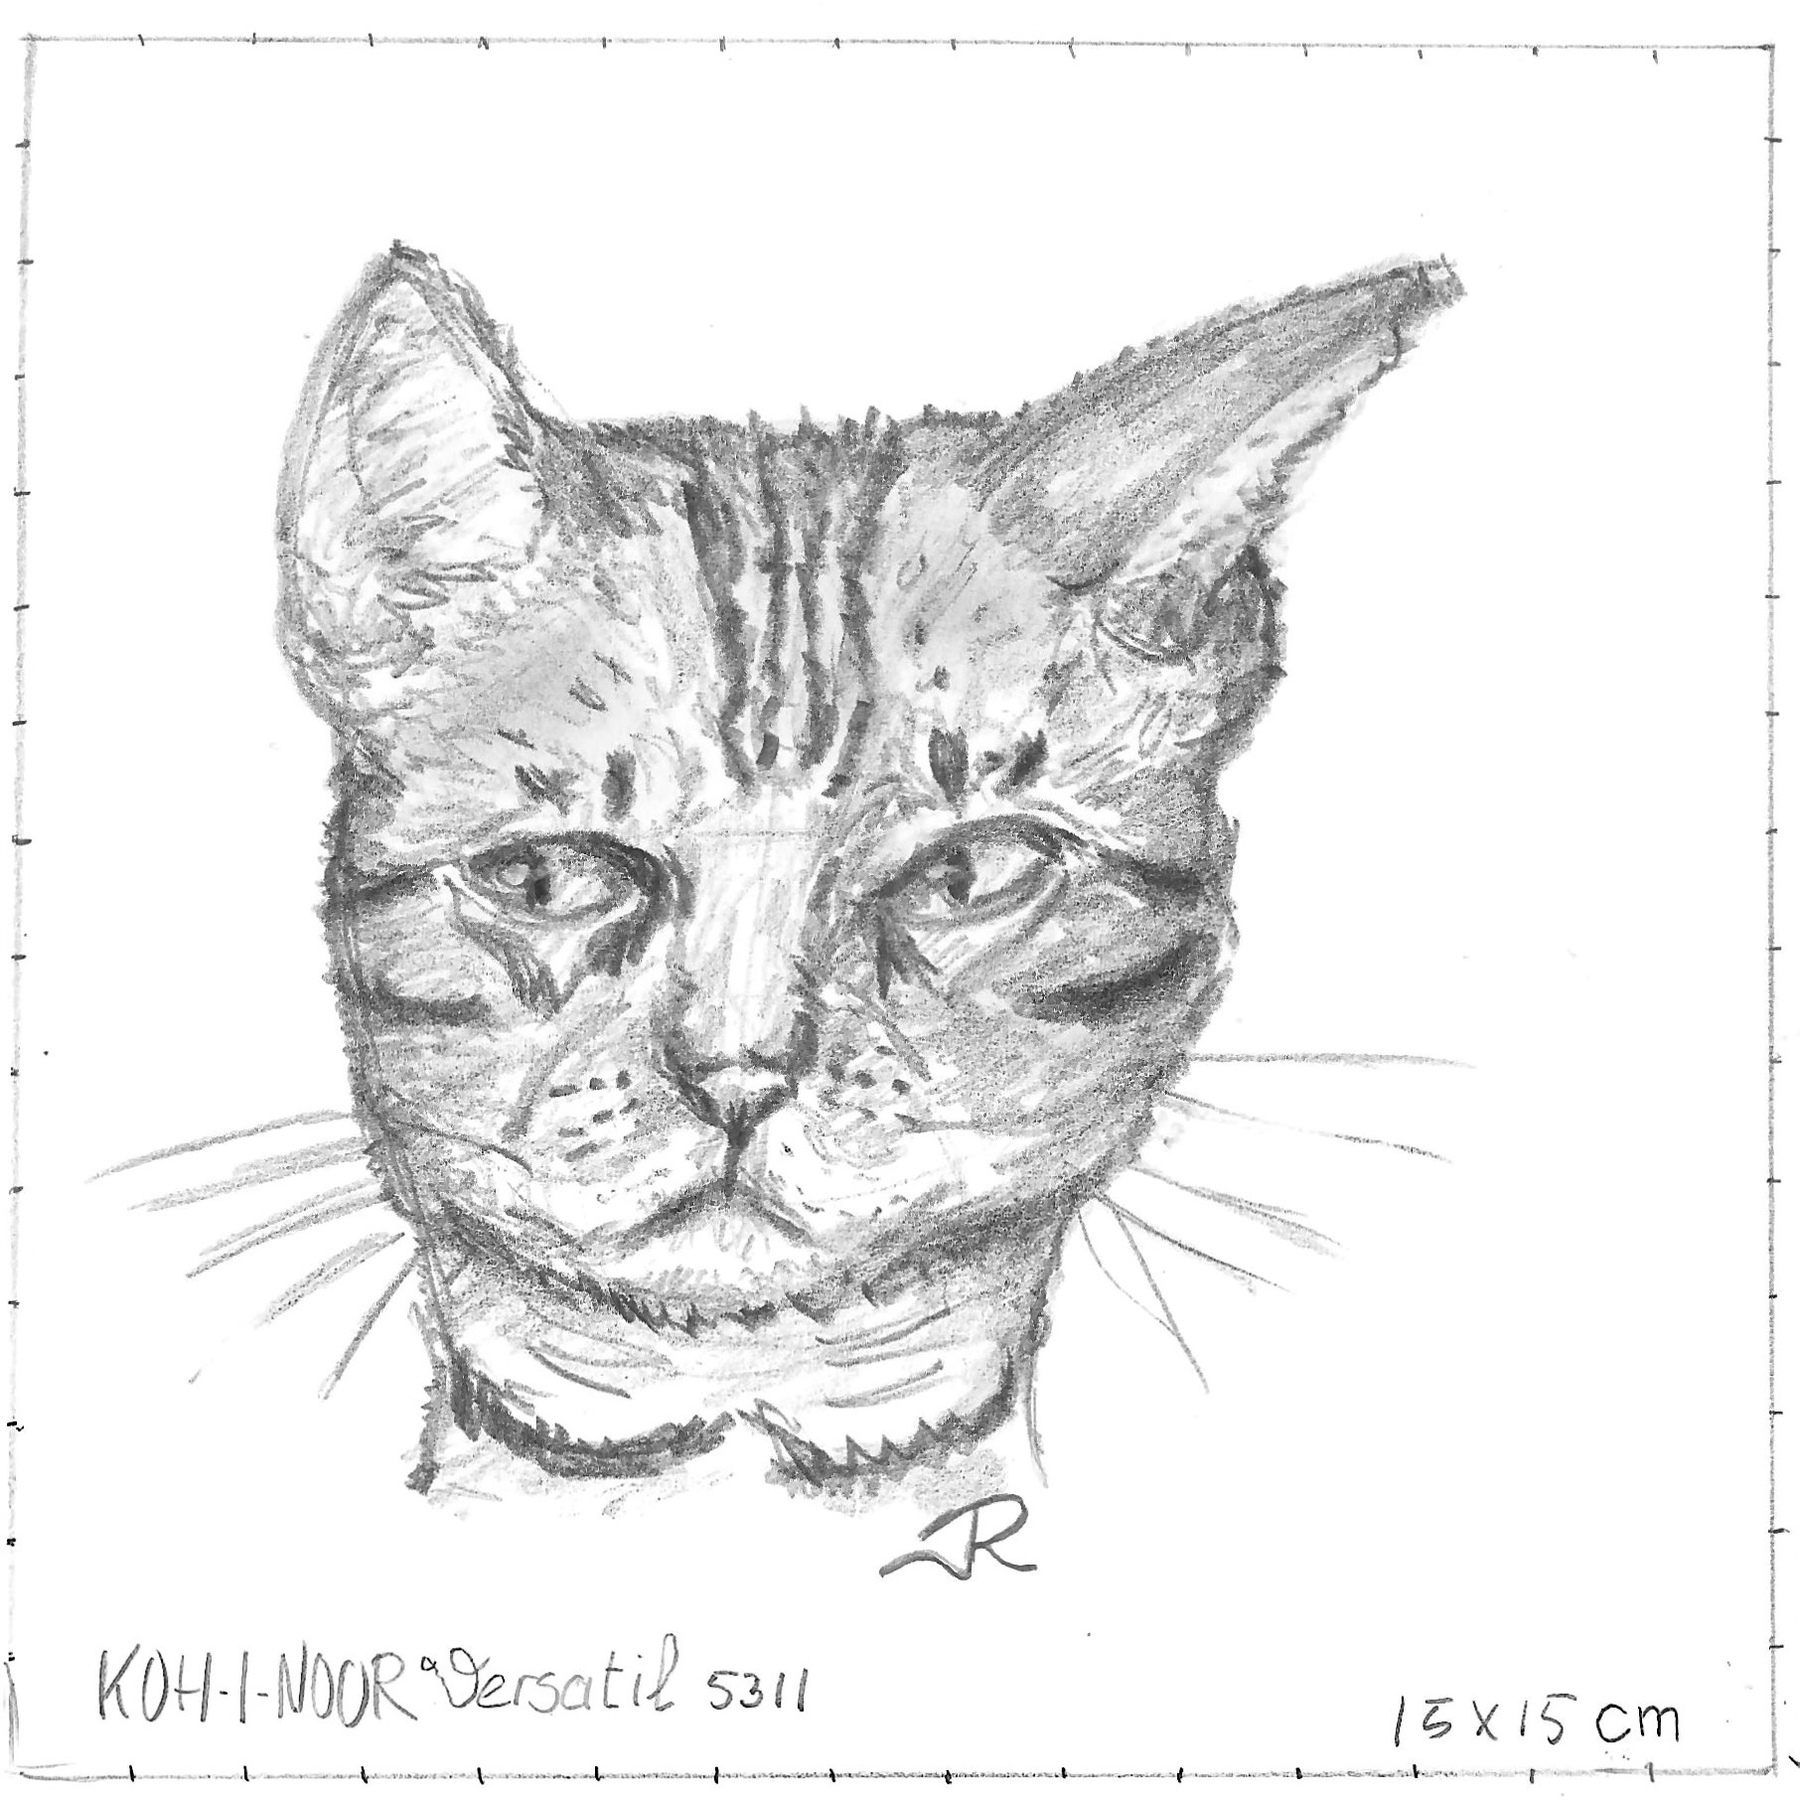 Pencil sketched cat portrait of a Bengal cat. 